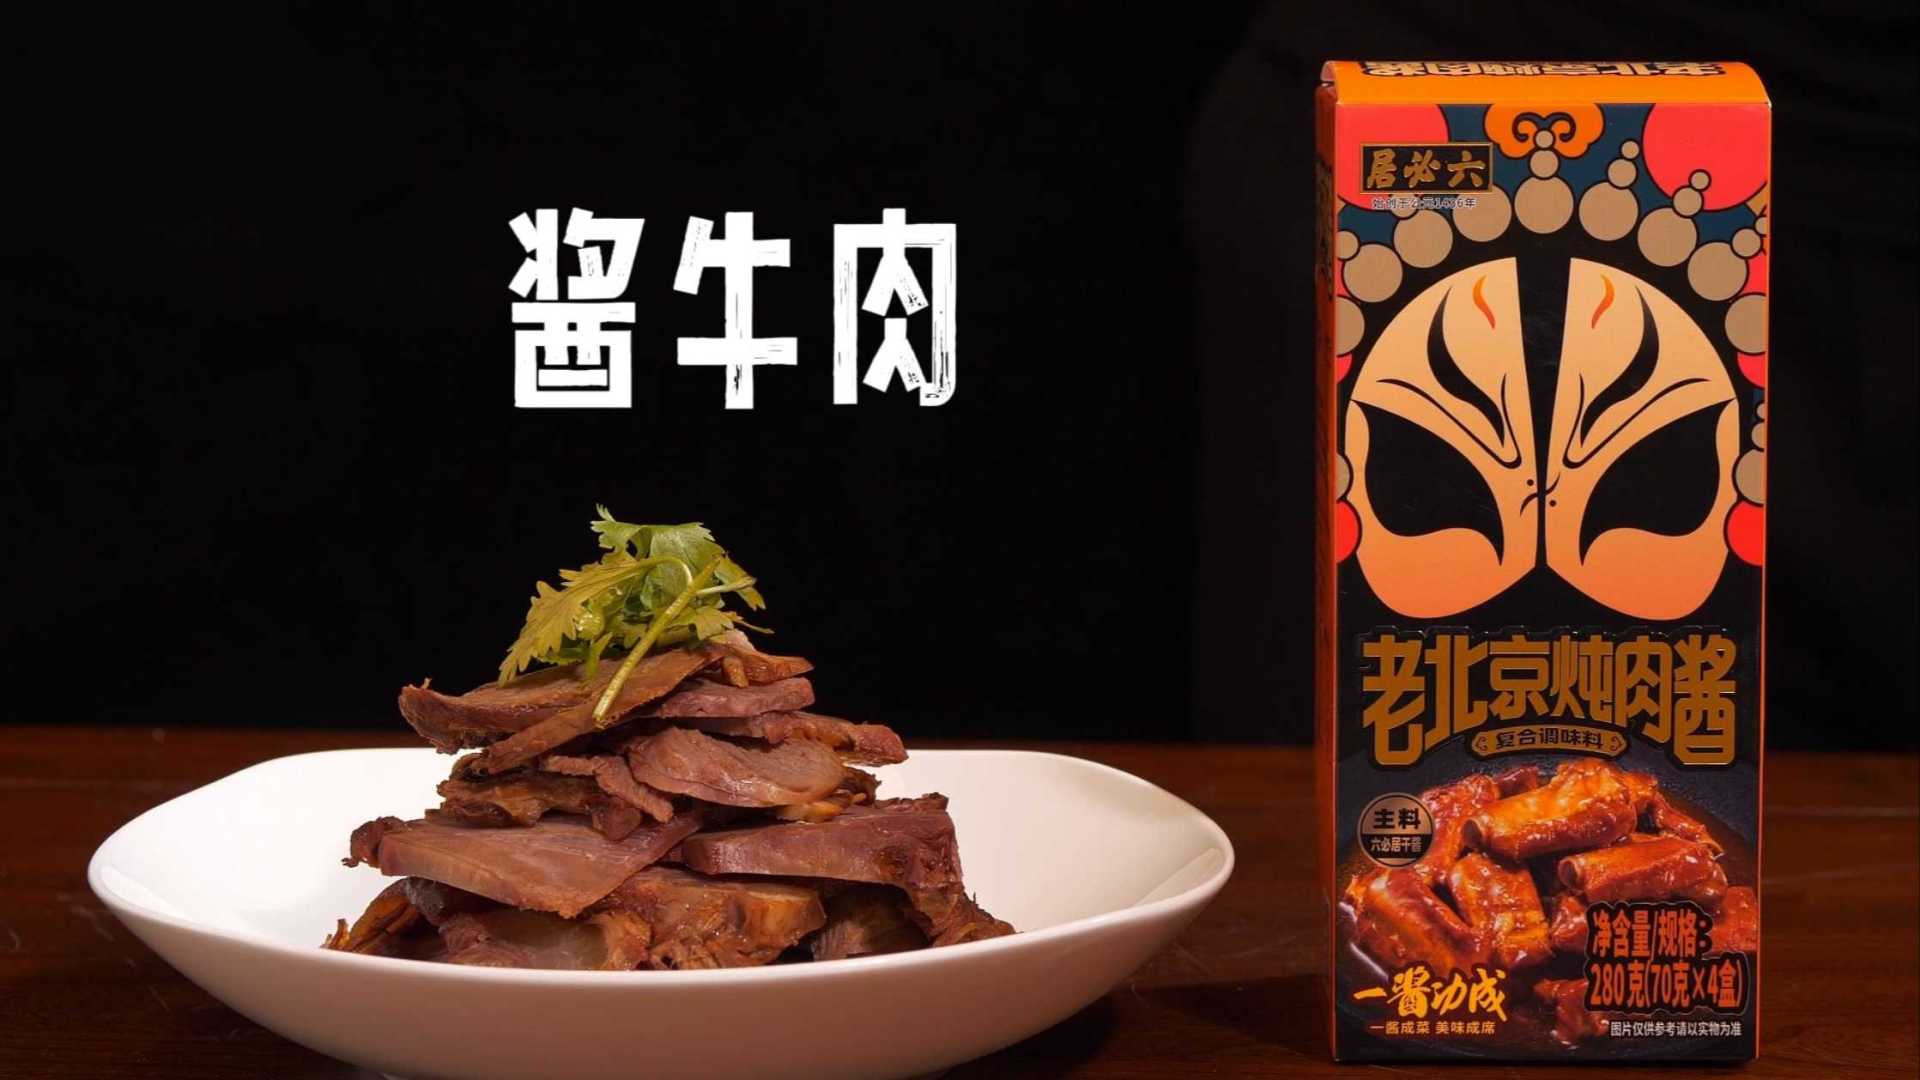 六必居“五虎上酱”系列之老北京炖肉酱